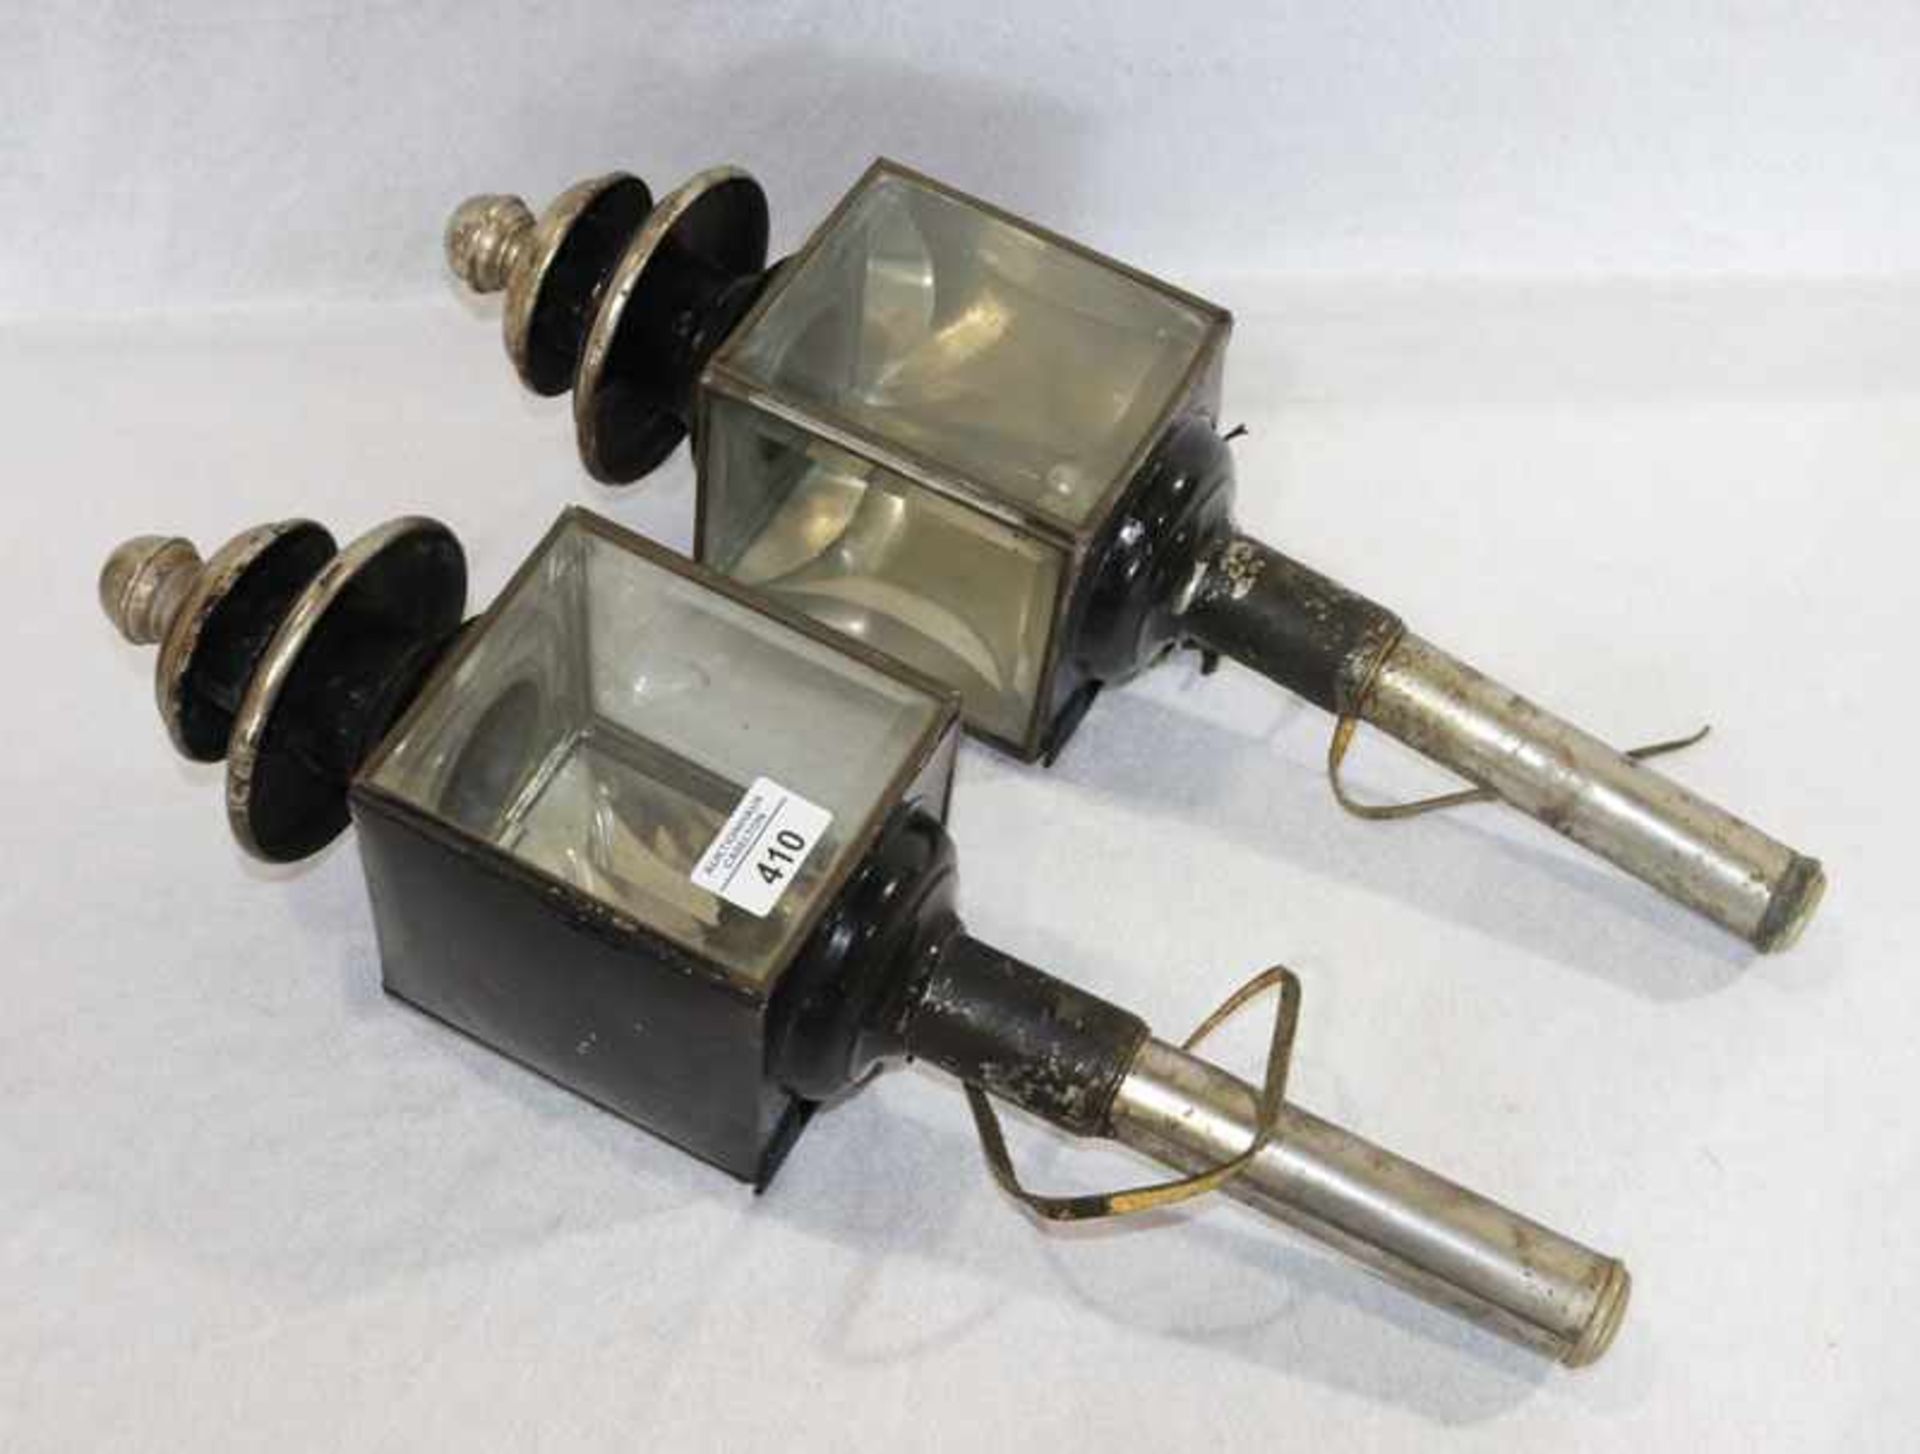 Paar Kutscherlampen mit geschliffenem Glas, 19. Jahrhundert, H 52 cm, B 13 cm, T 13 cm, Alters-